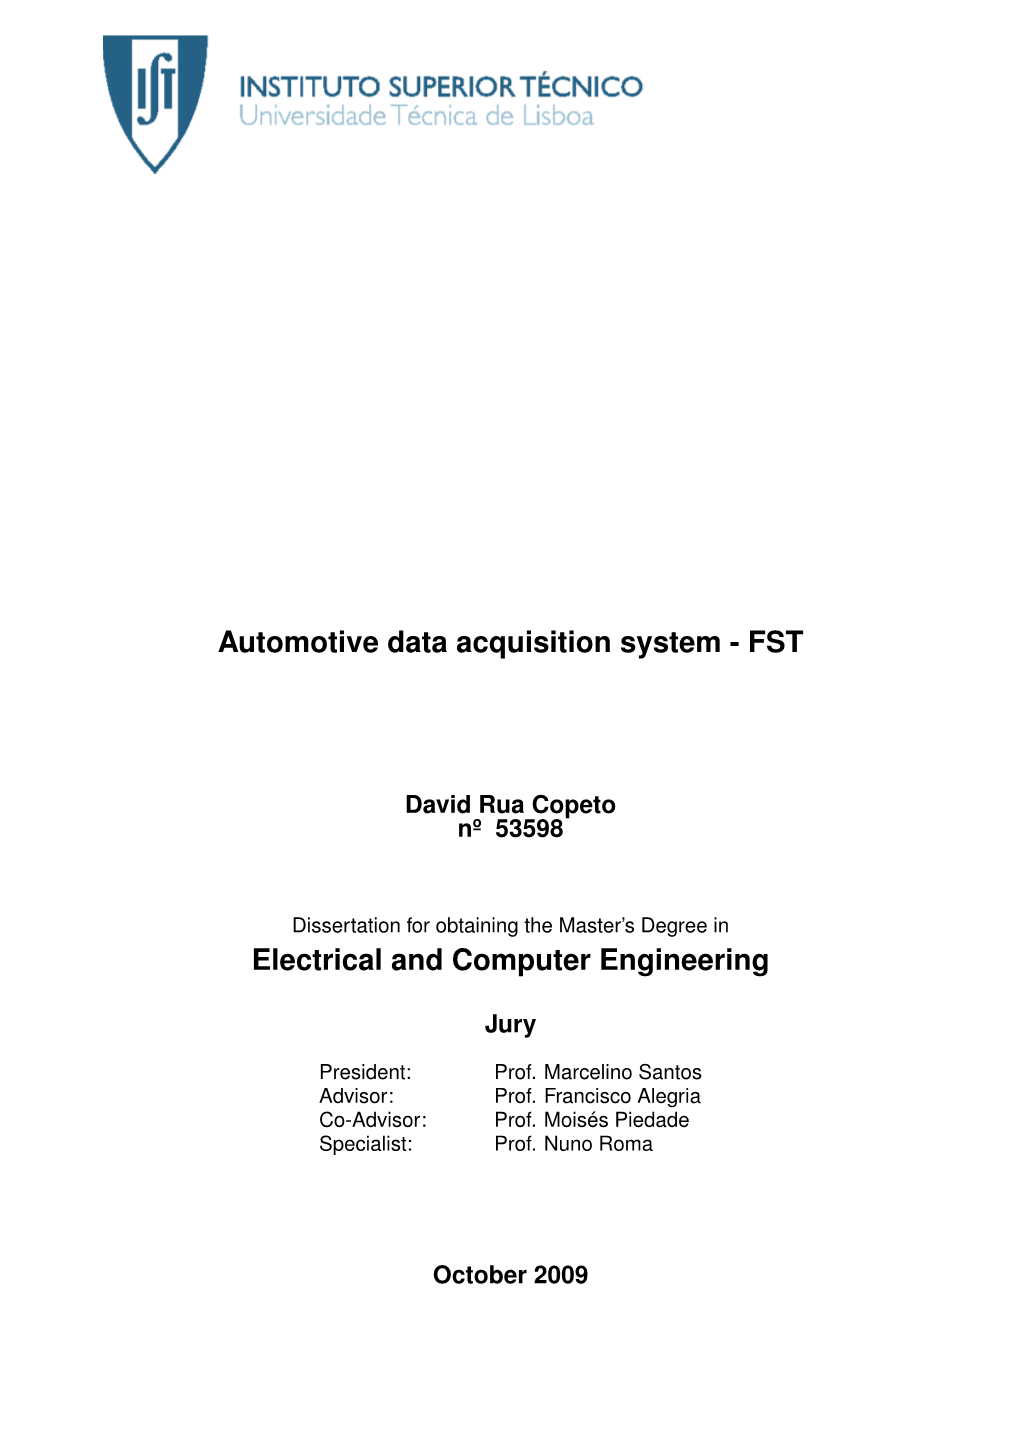 Automotive Data Acquisition System - FST